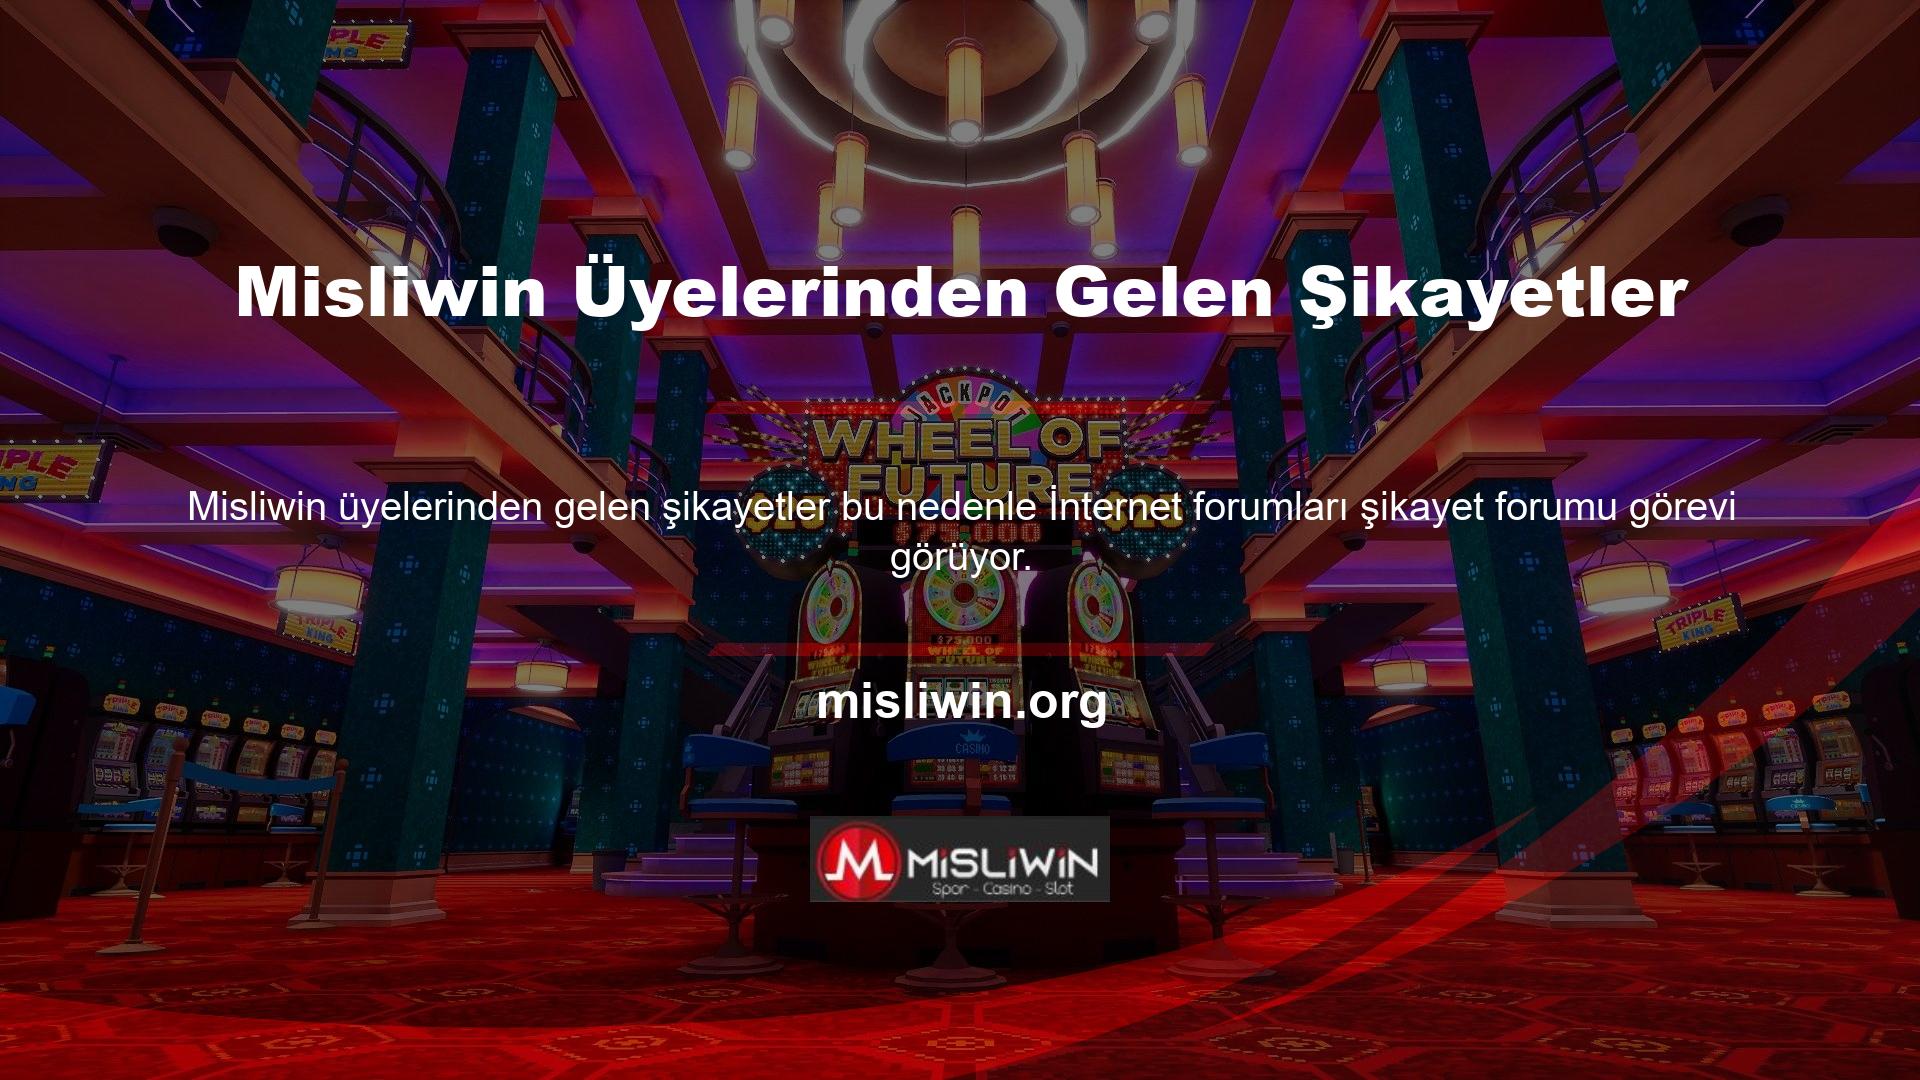 Misliwin online casino sitesinin üyelerinden gelen şikayetlerle ilgili bilgi almak için bu forumları ararsanız, şu anda bu siteyle ilgili herhangi bir şikayetin olmadığını göreceksiniz